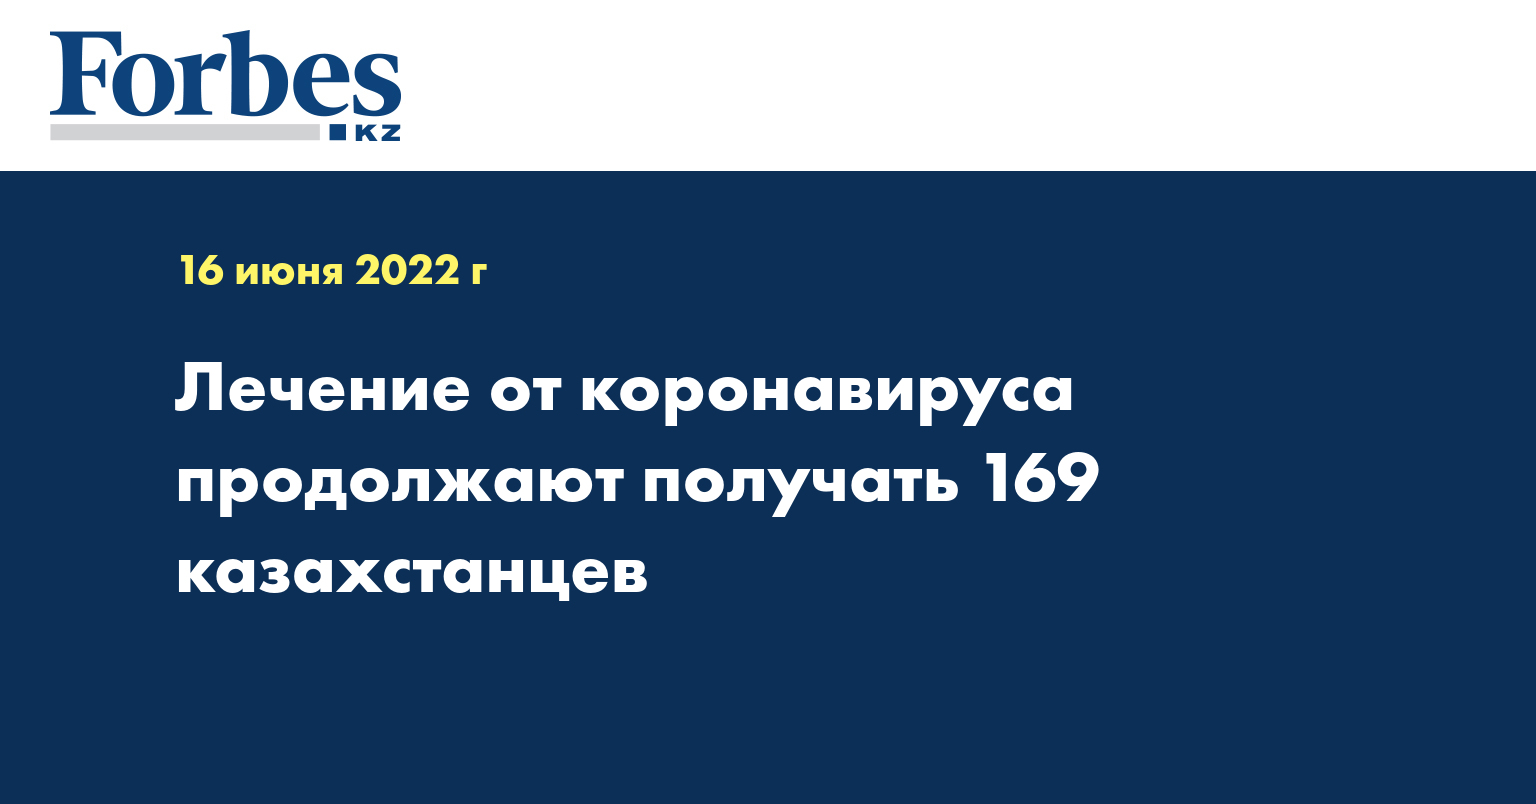 Лечение от коронавируса продолжают получать 169 казахстанцев